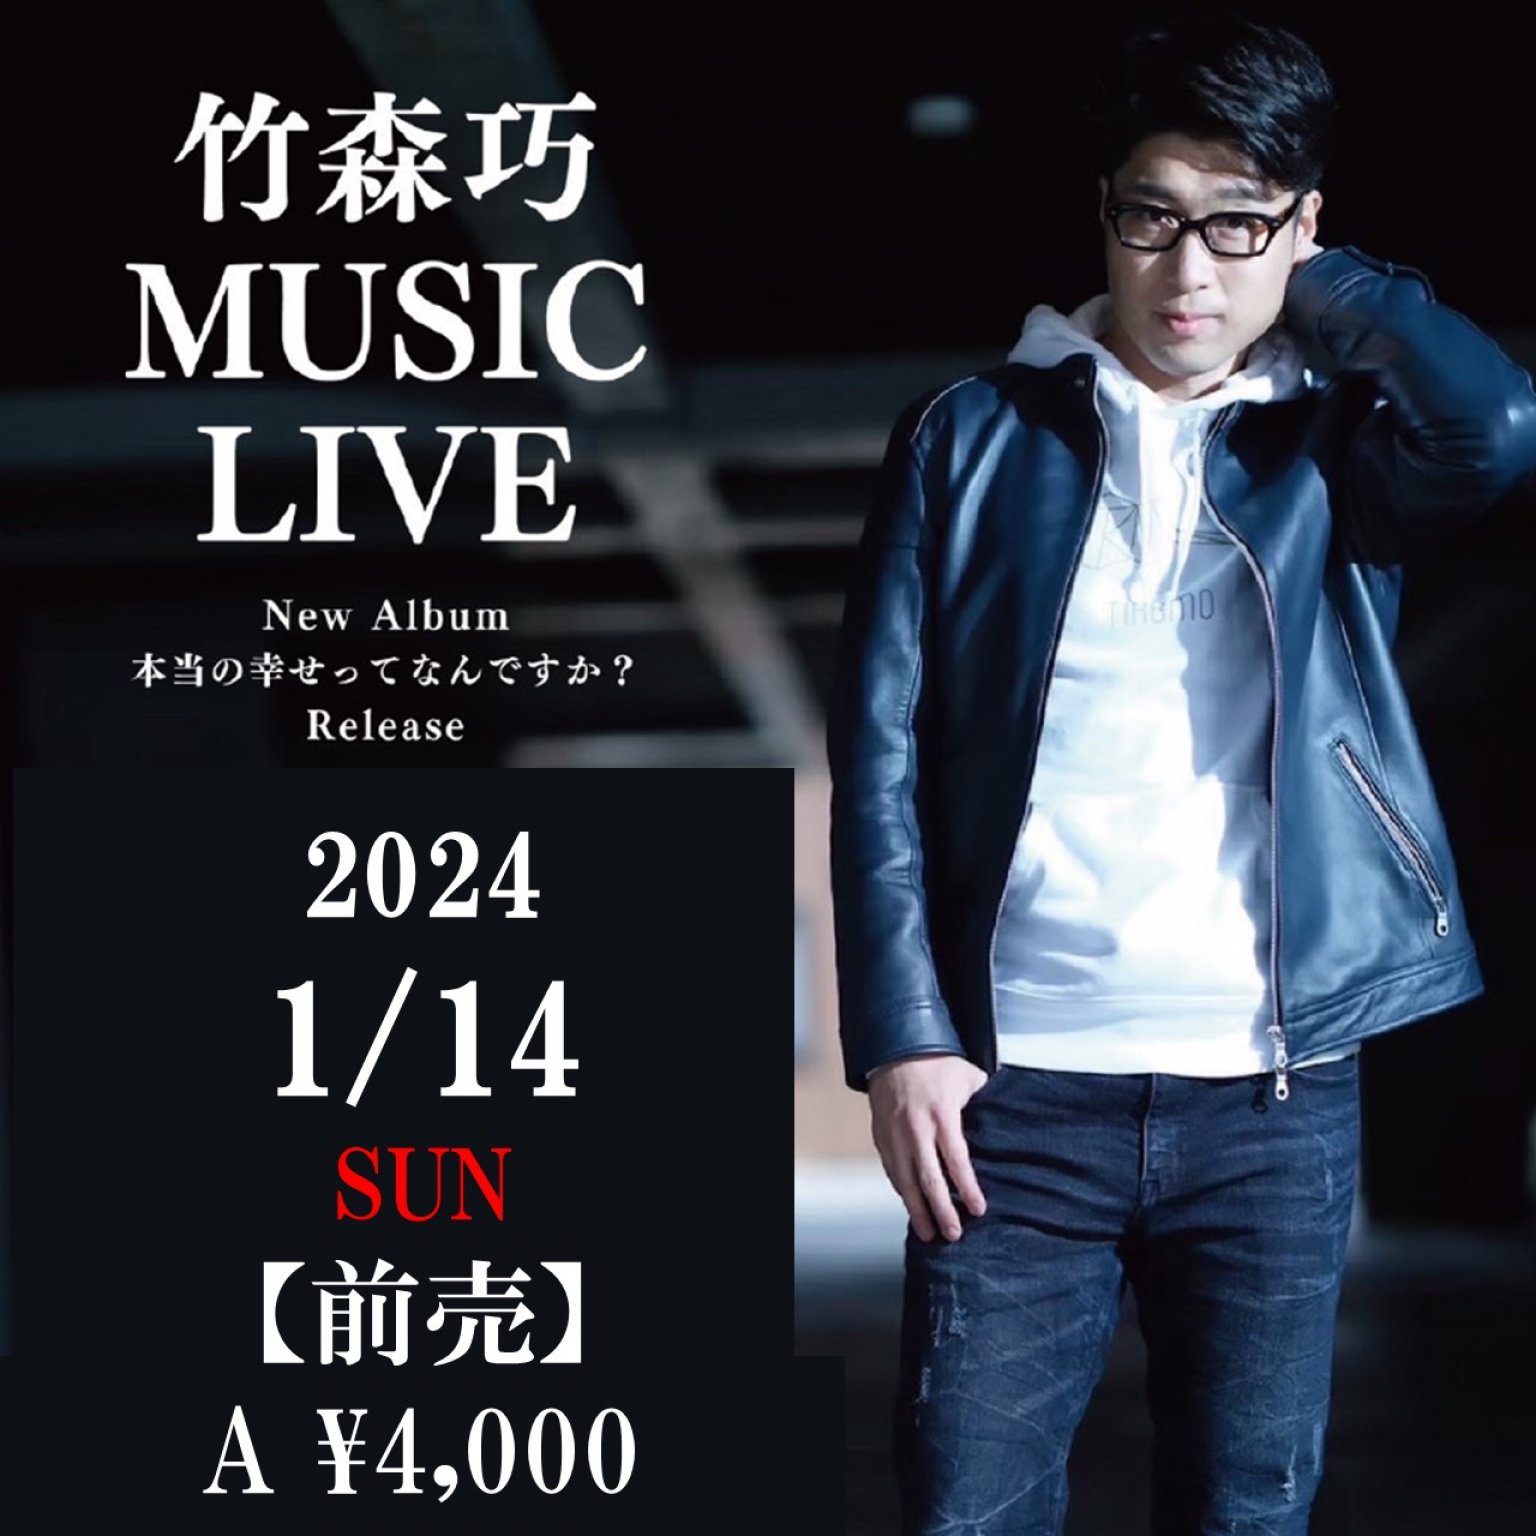 【前売り券・A席】KITARA ・竹森巧 MUSIC LIVE